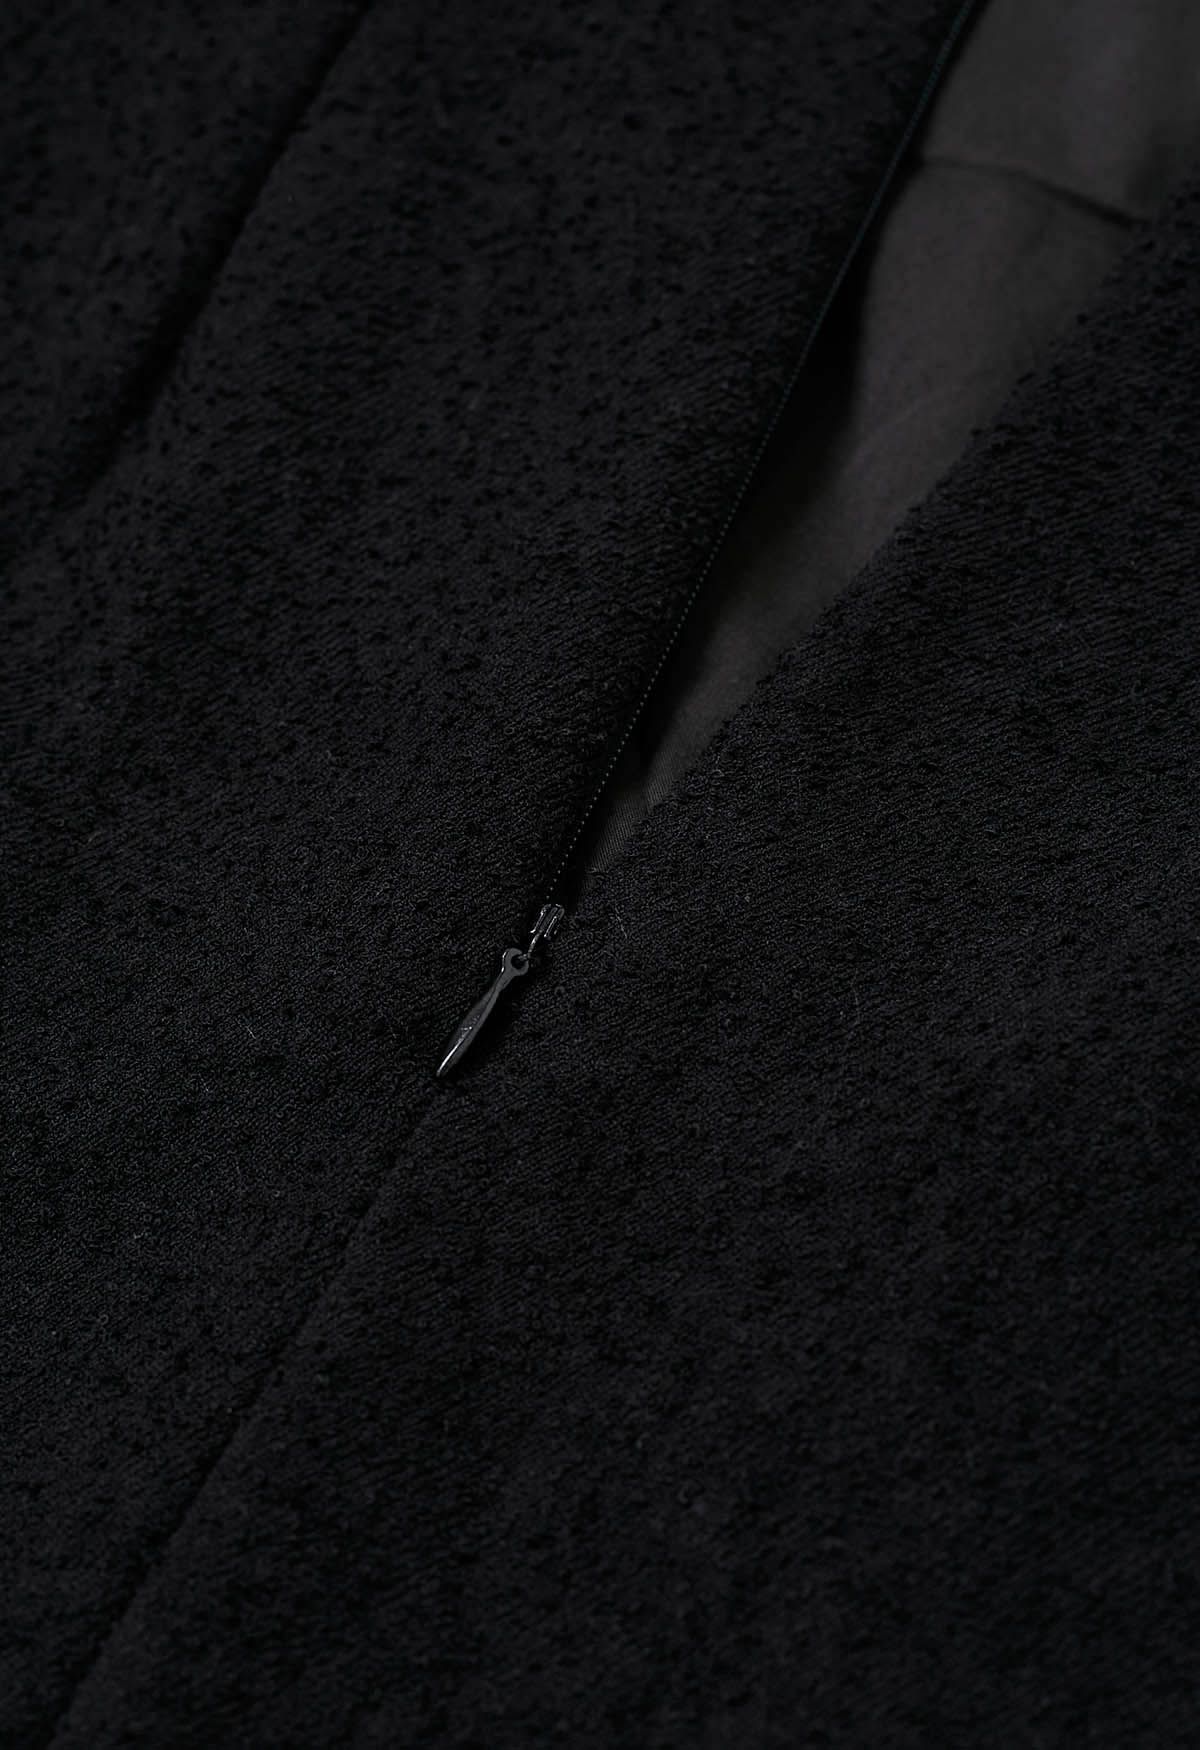 Robe caraco texturée à franges ludique en noir